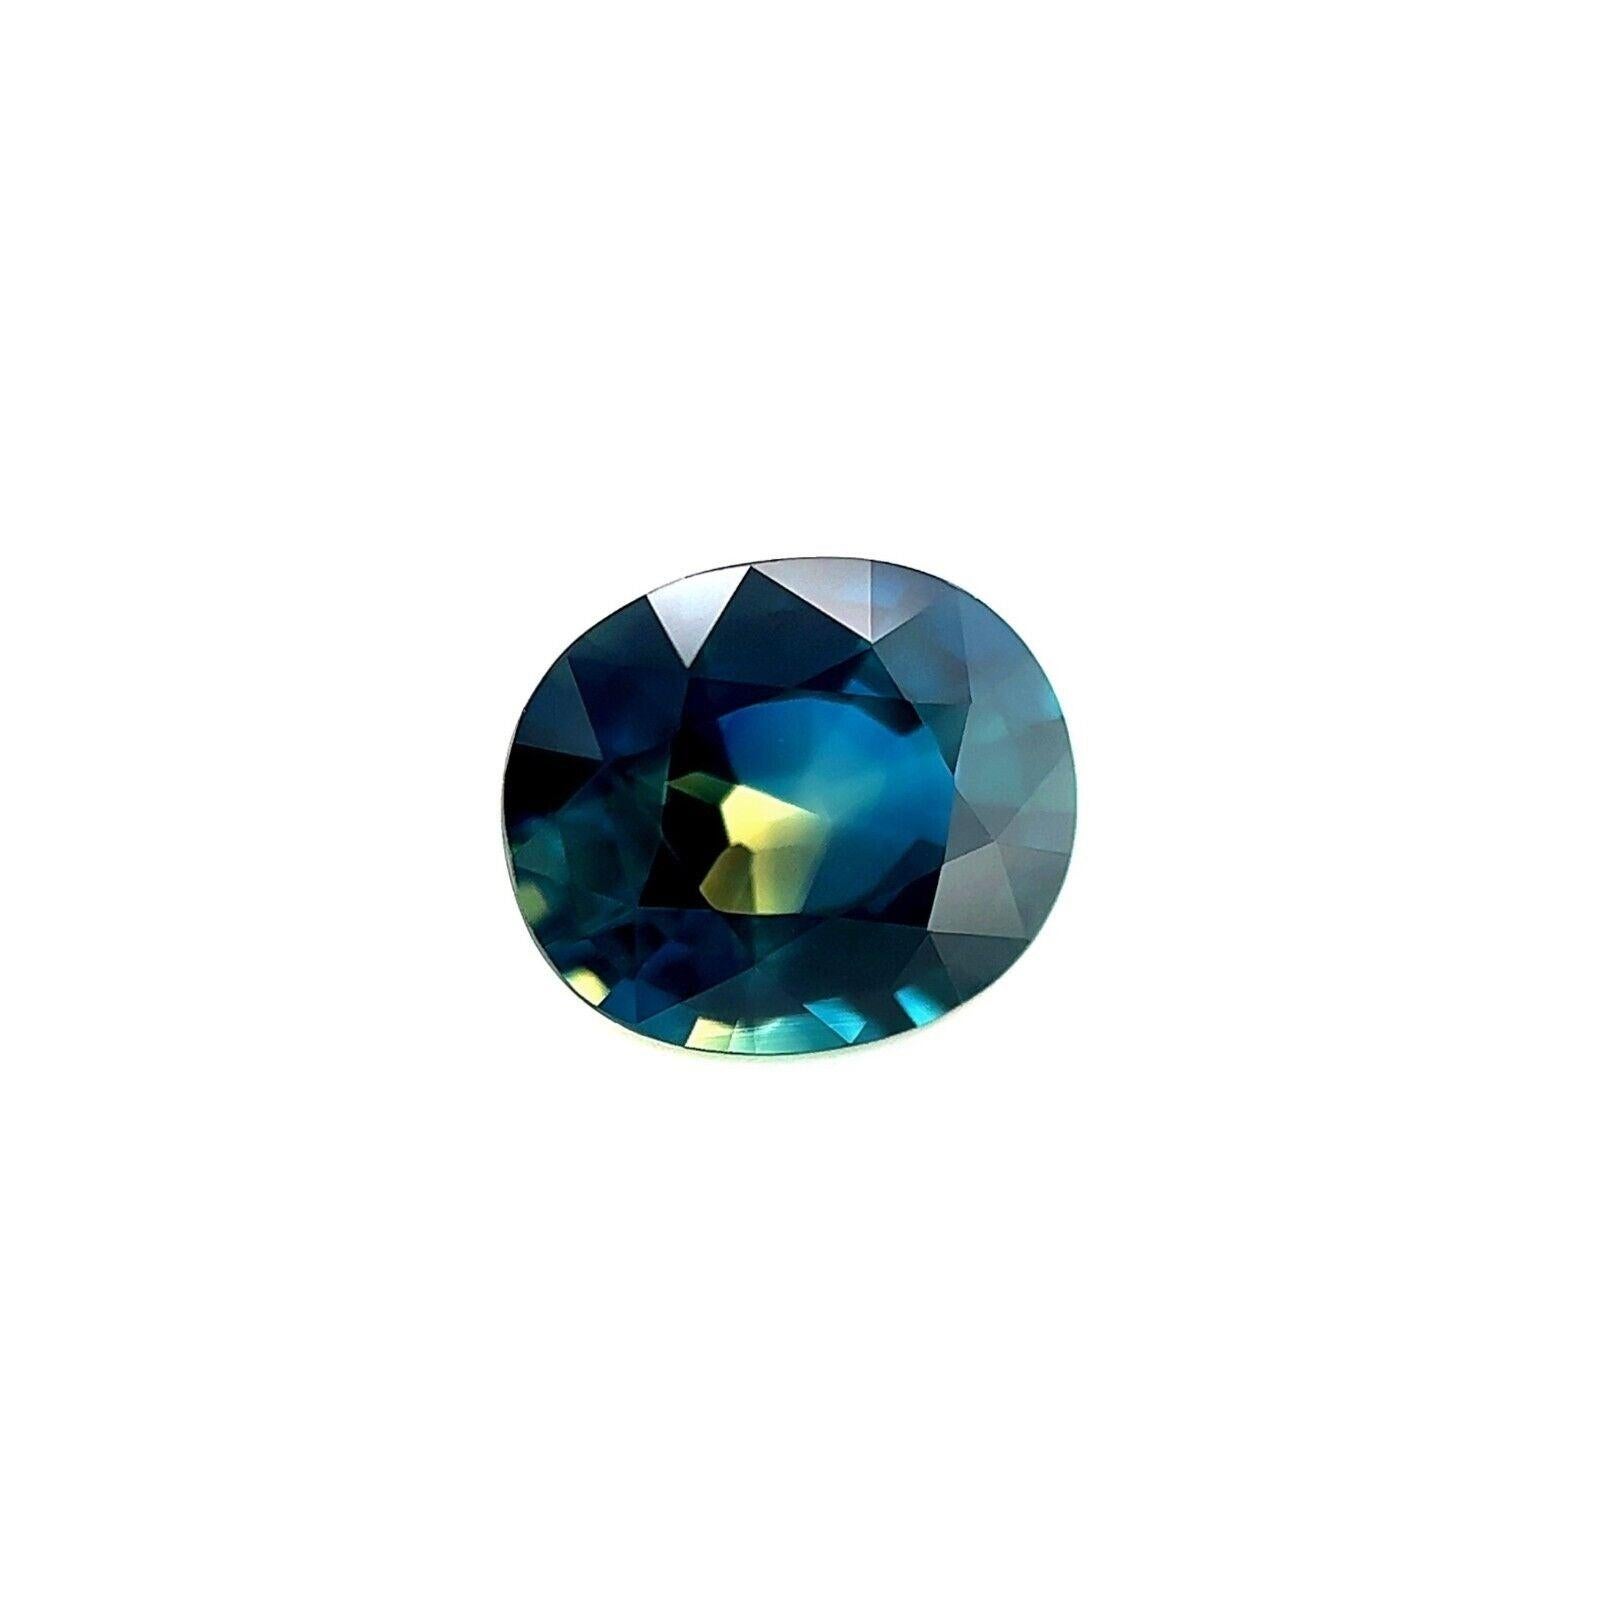 GIA-zertifizierter einzigartiger zweifarbiger Saphir 1,34 Karat Gelbblau Ovalschliff Unbehandelt

Natürlicher einzigartiger GIA-zertifizierter unbehandelter zweifarbiger Saphir-Edelstein.
1,34 Karat unerhitzter Saphir mit einzigartigem blau-gelben